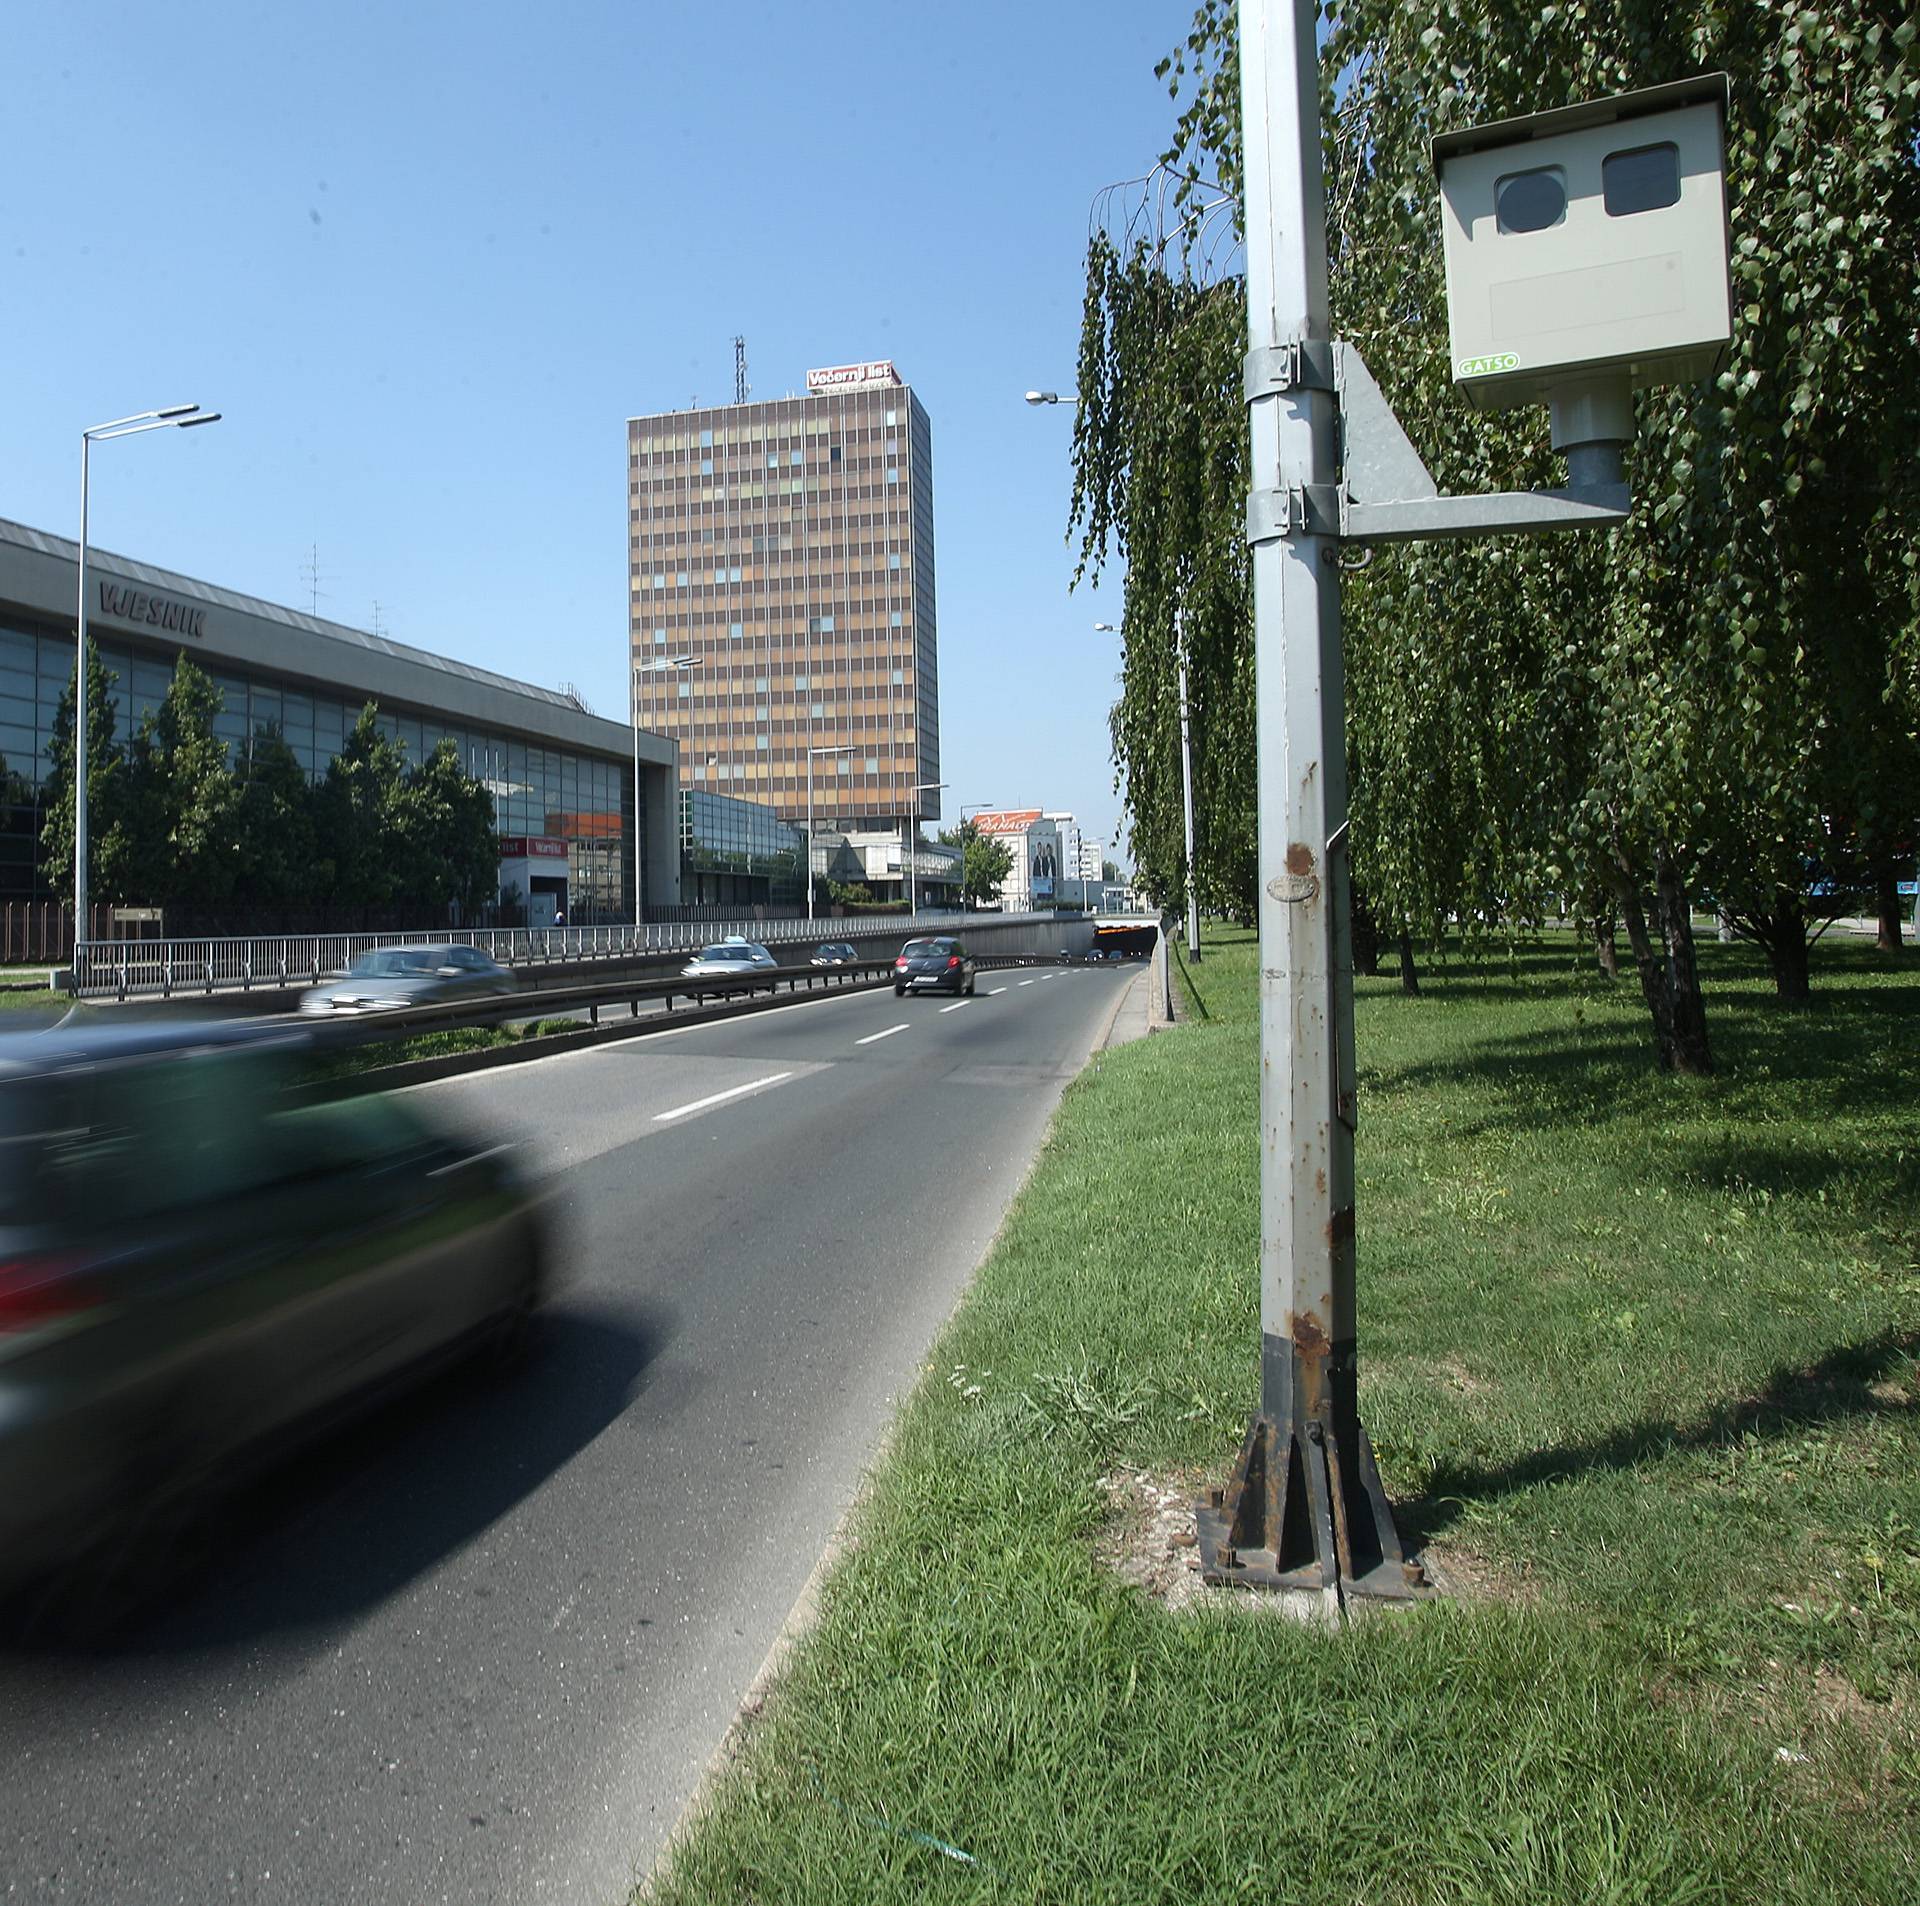 Čemu uopće služe statične kamere na hrvatskim cestama?